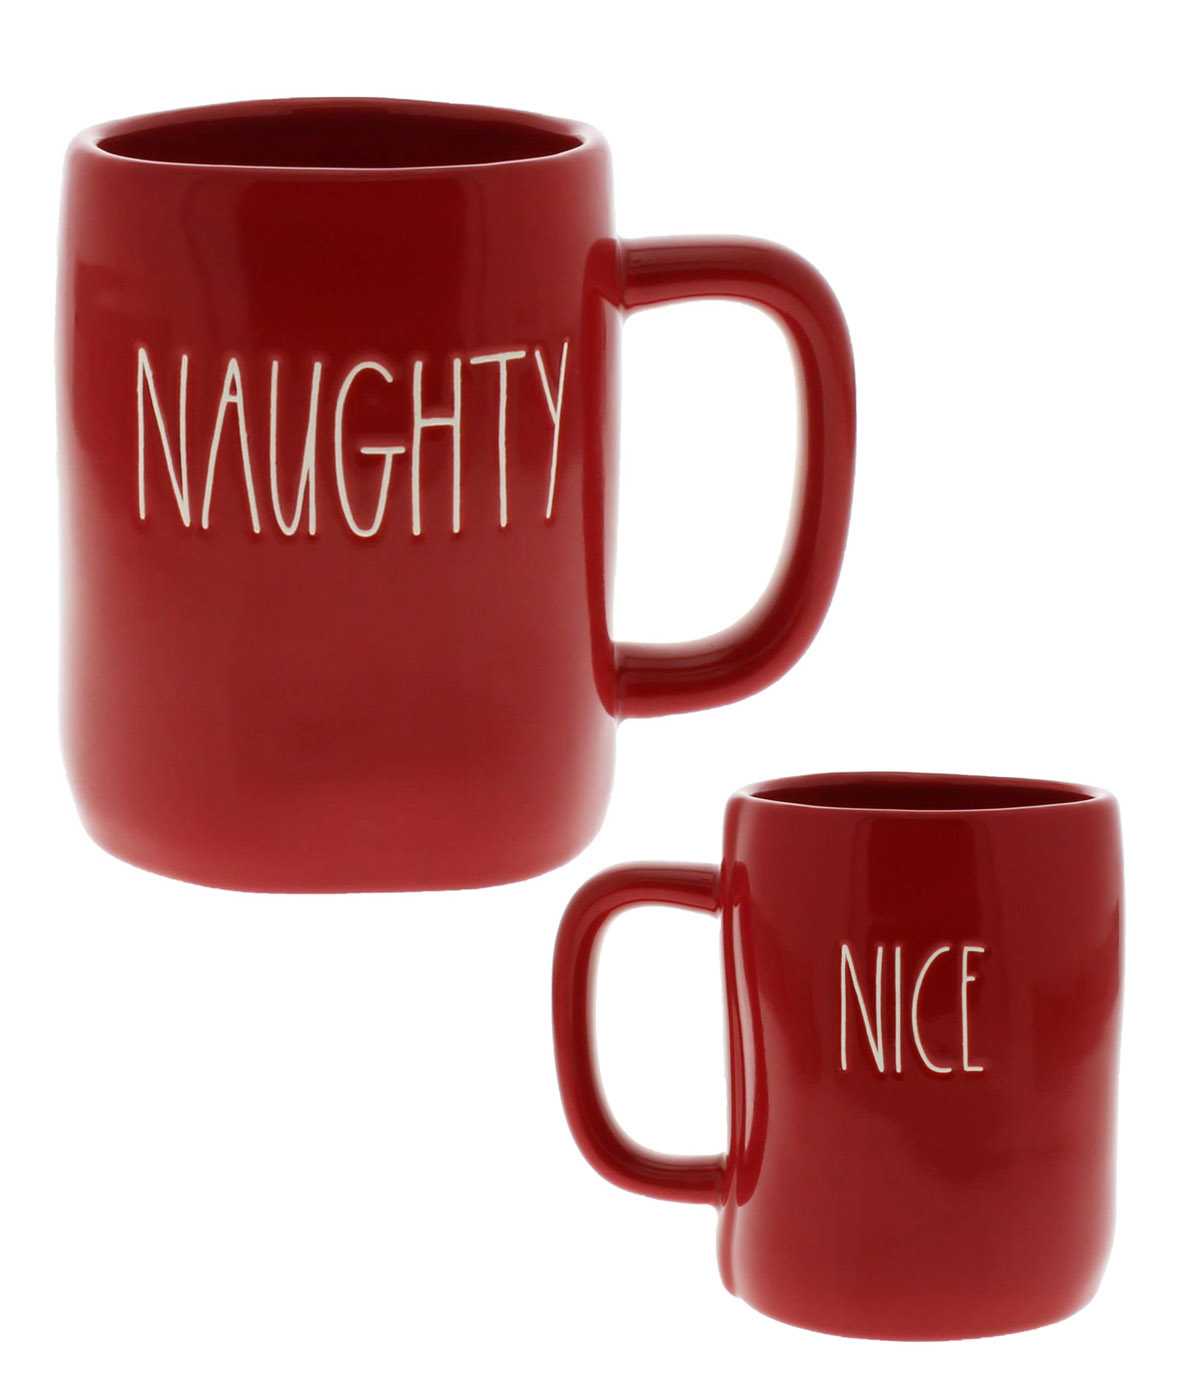 naughty and nice mug